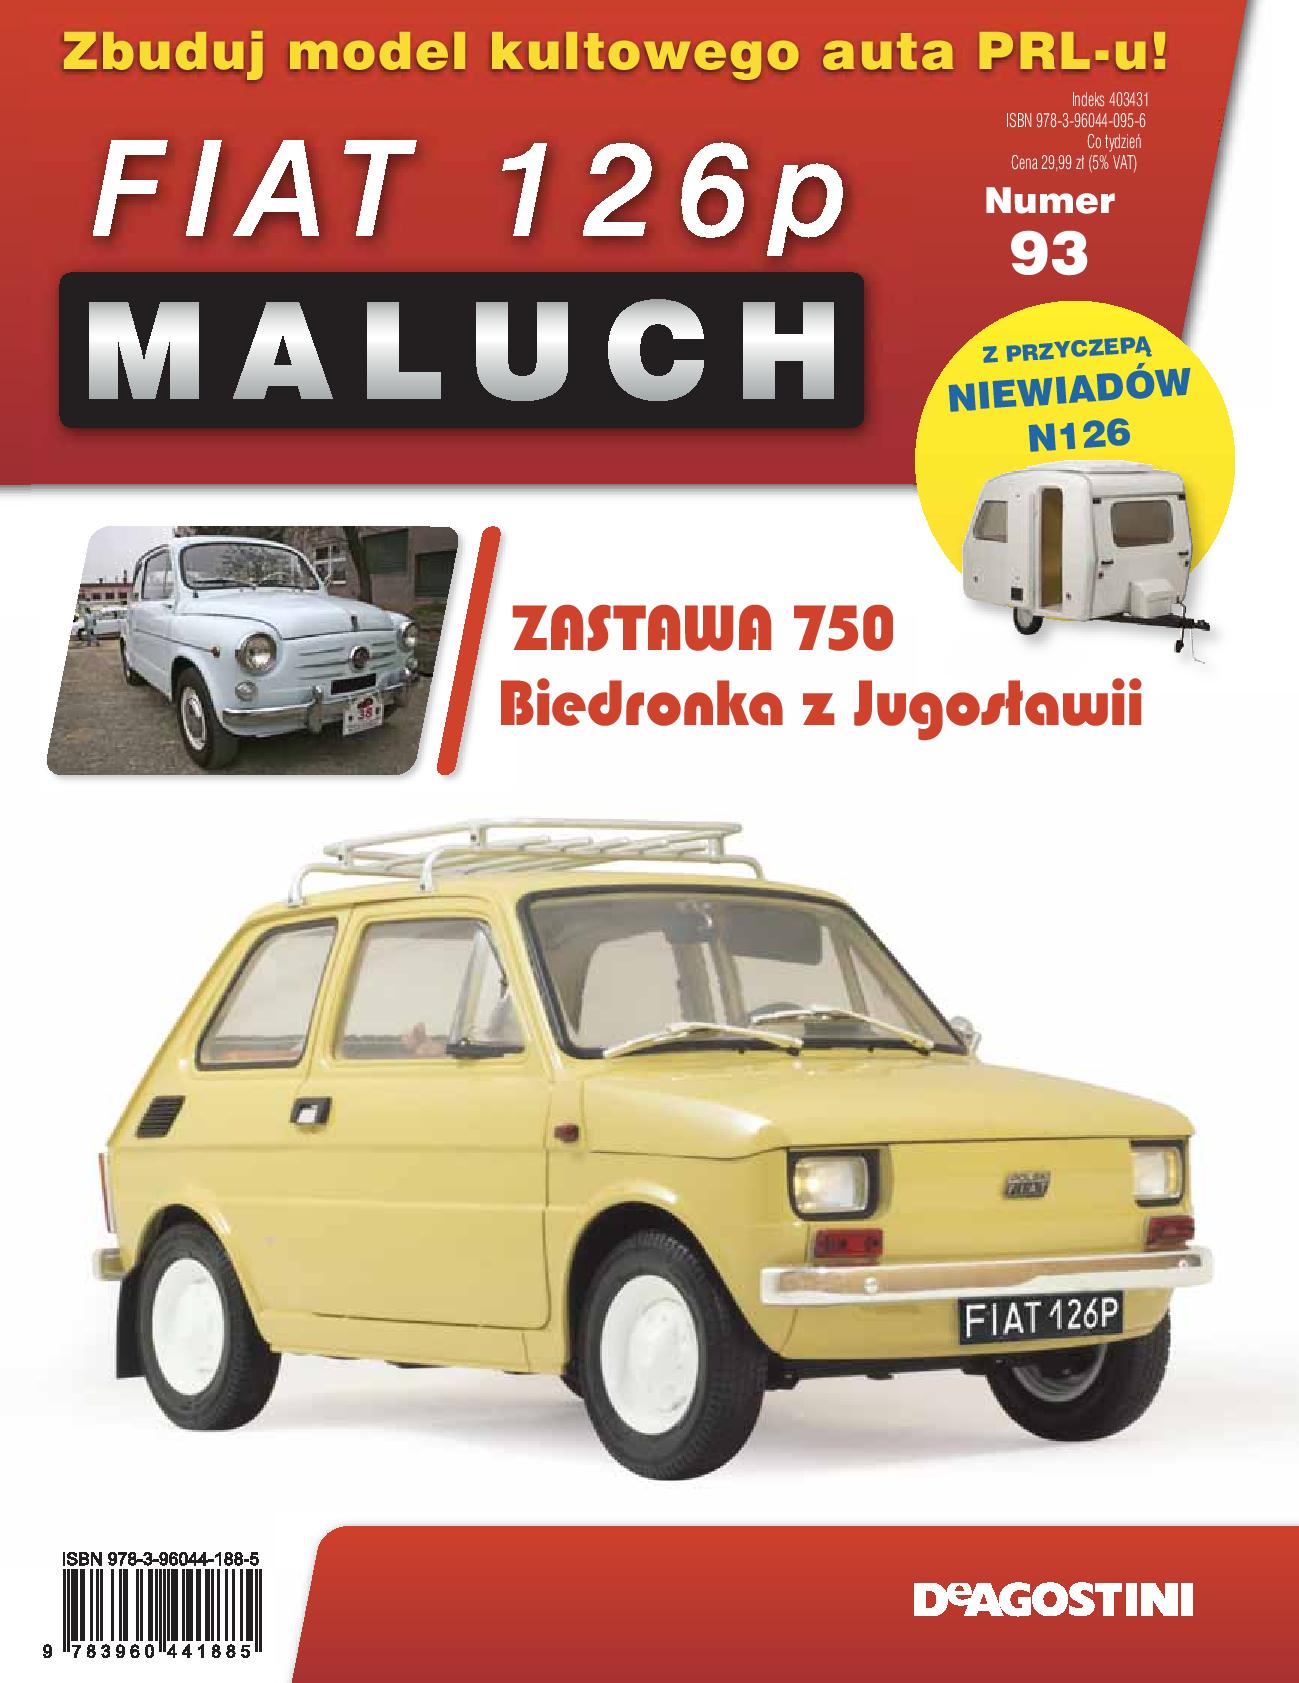 93 Fiat 126p Maluch z dodatkiem kolejne elementy